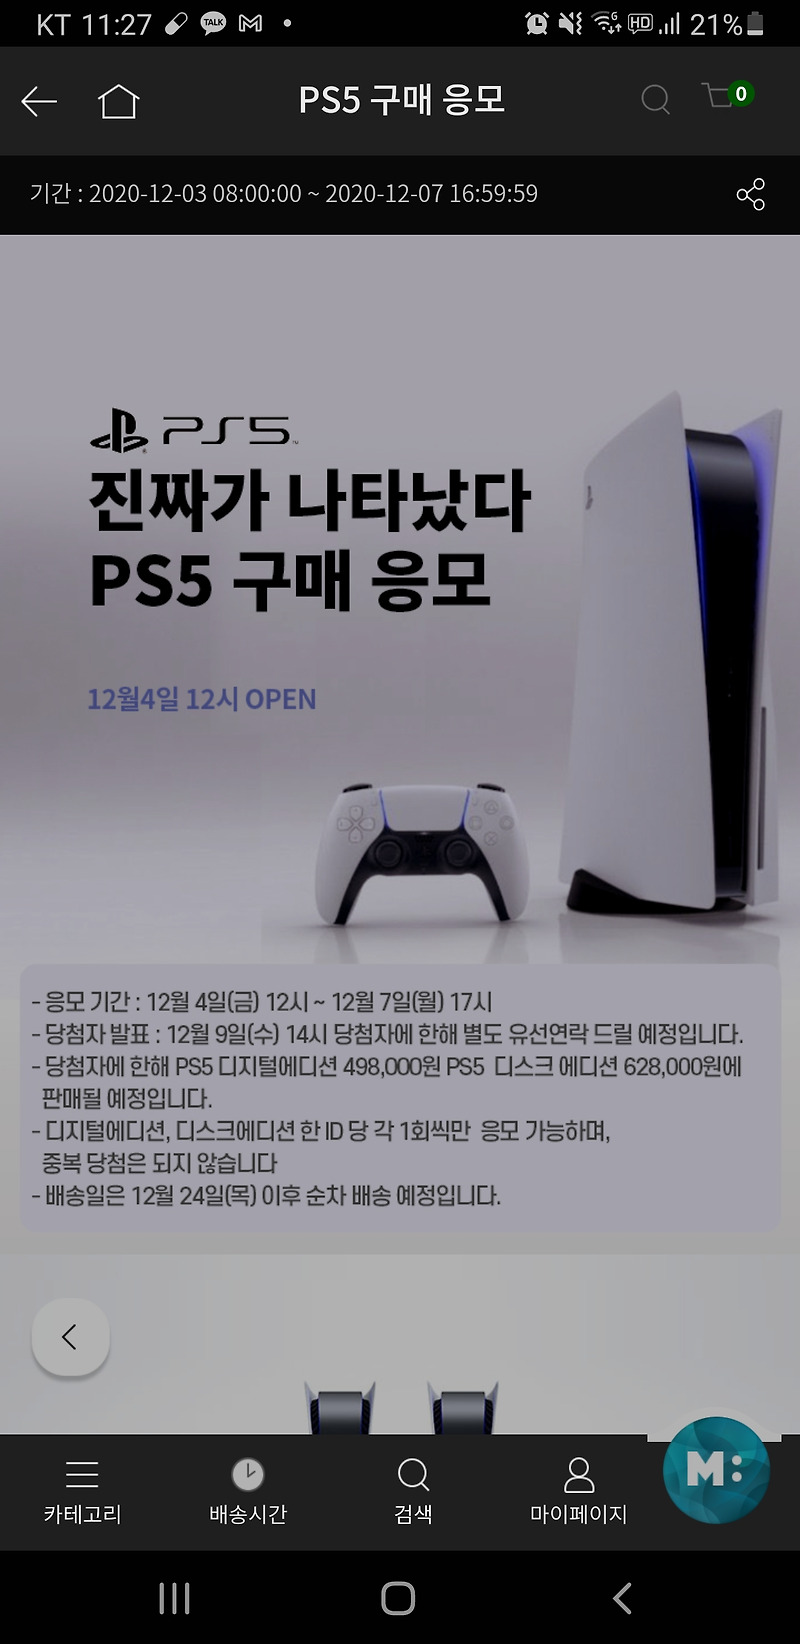 [정보] GS Fresh PS5 2차 추첨 결과는 확인하실 수 없습니다.